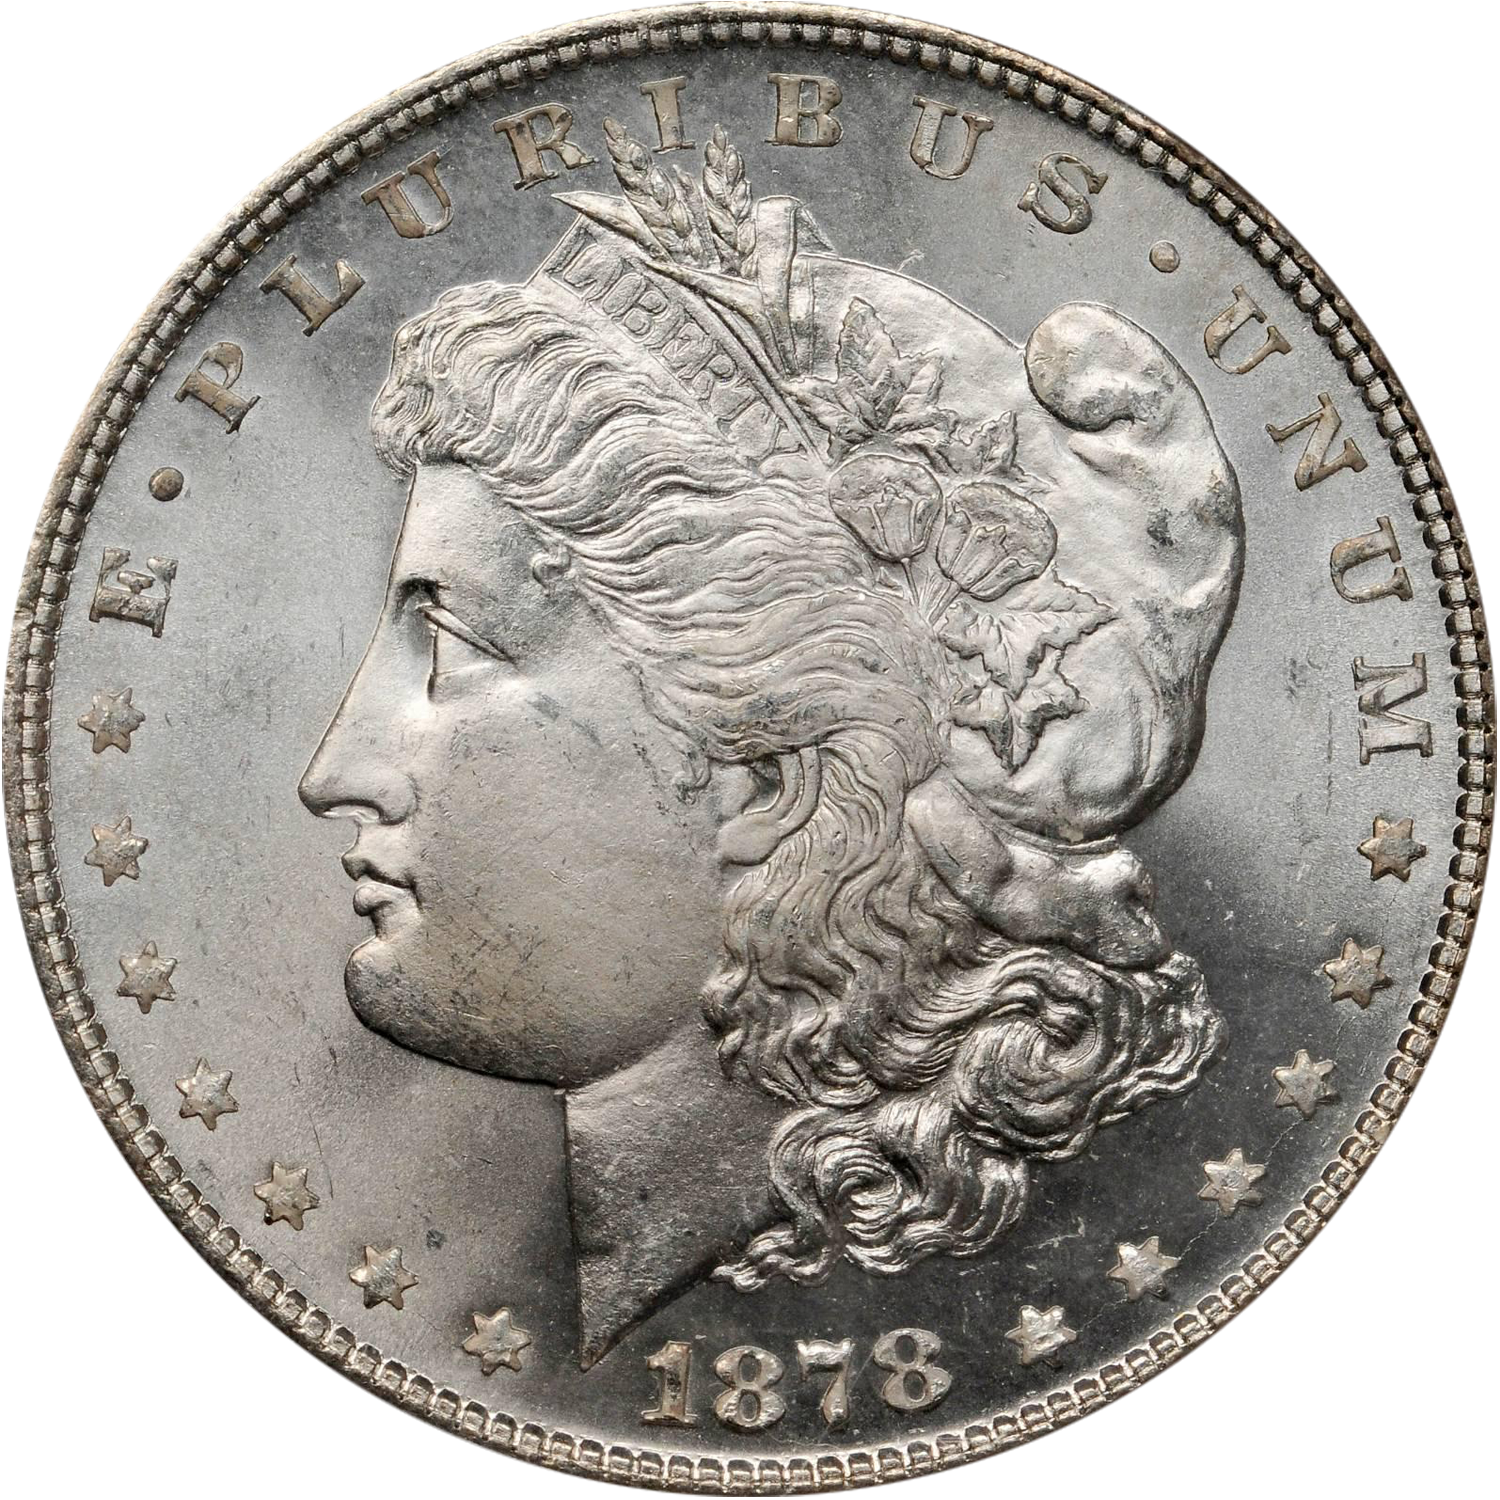 1878 7 over 8 tf morgan silver dollar